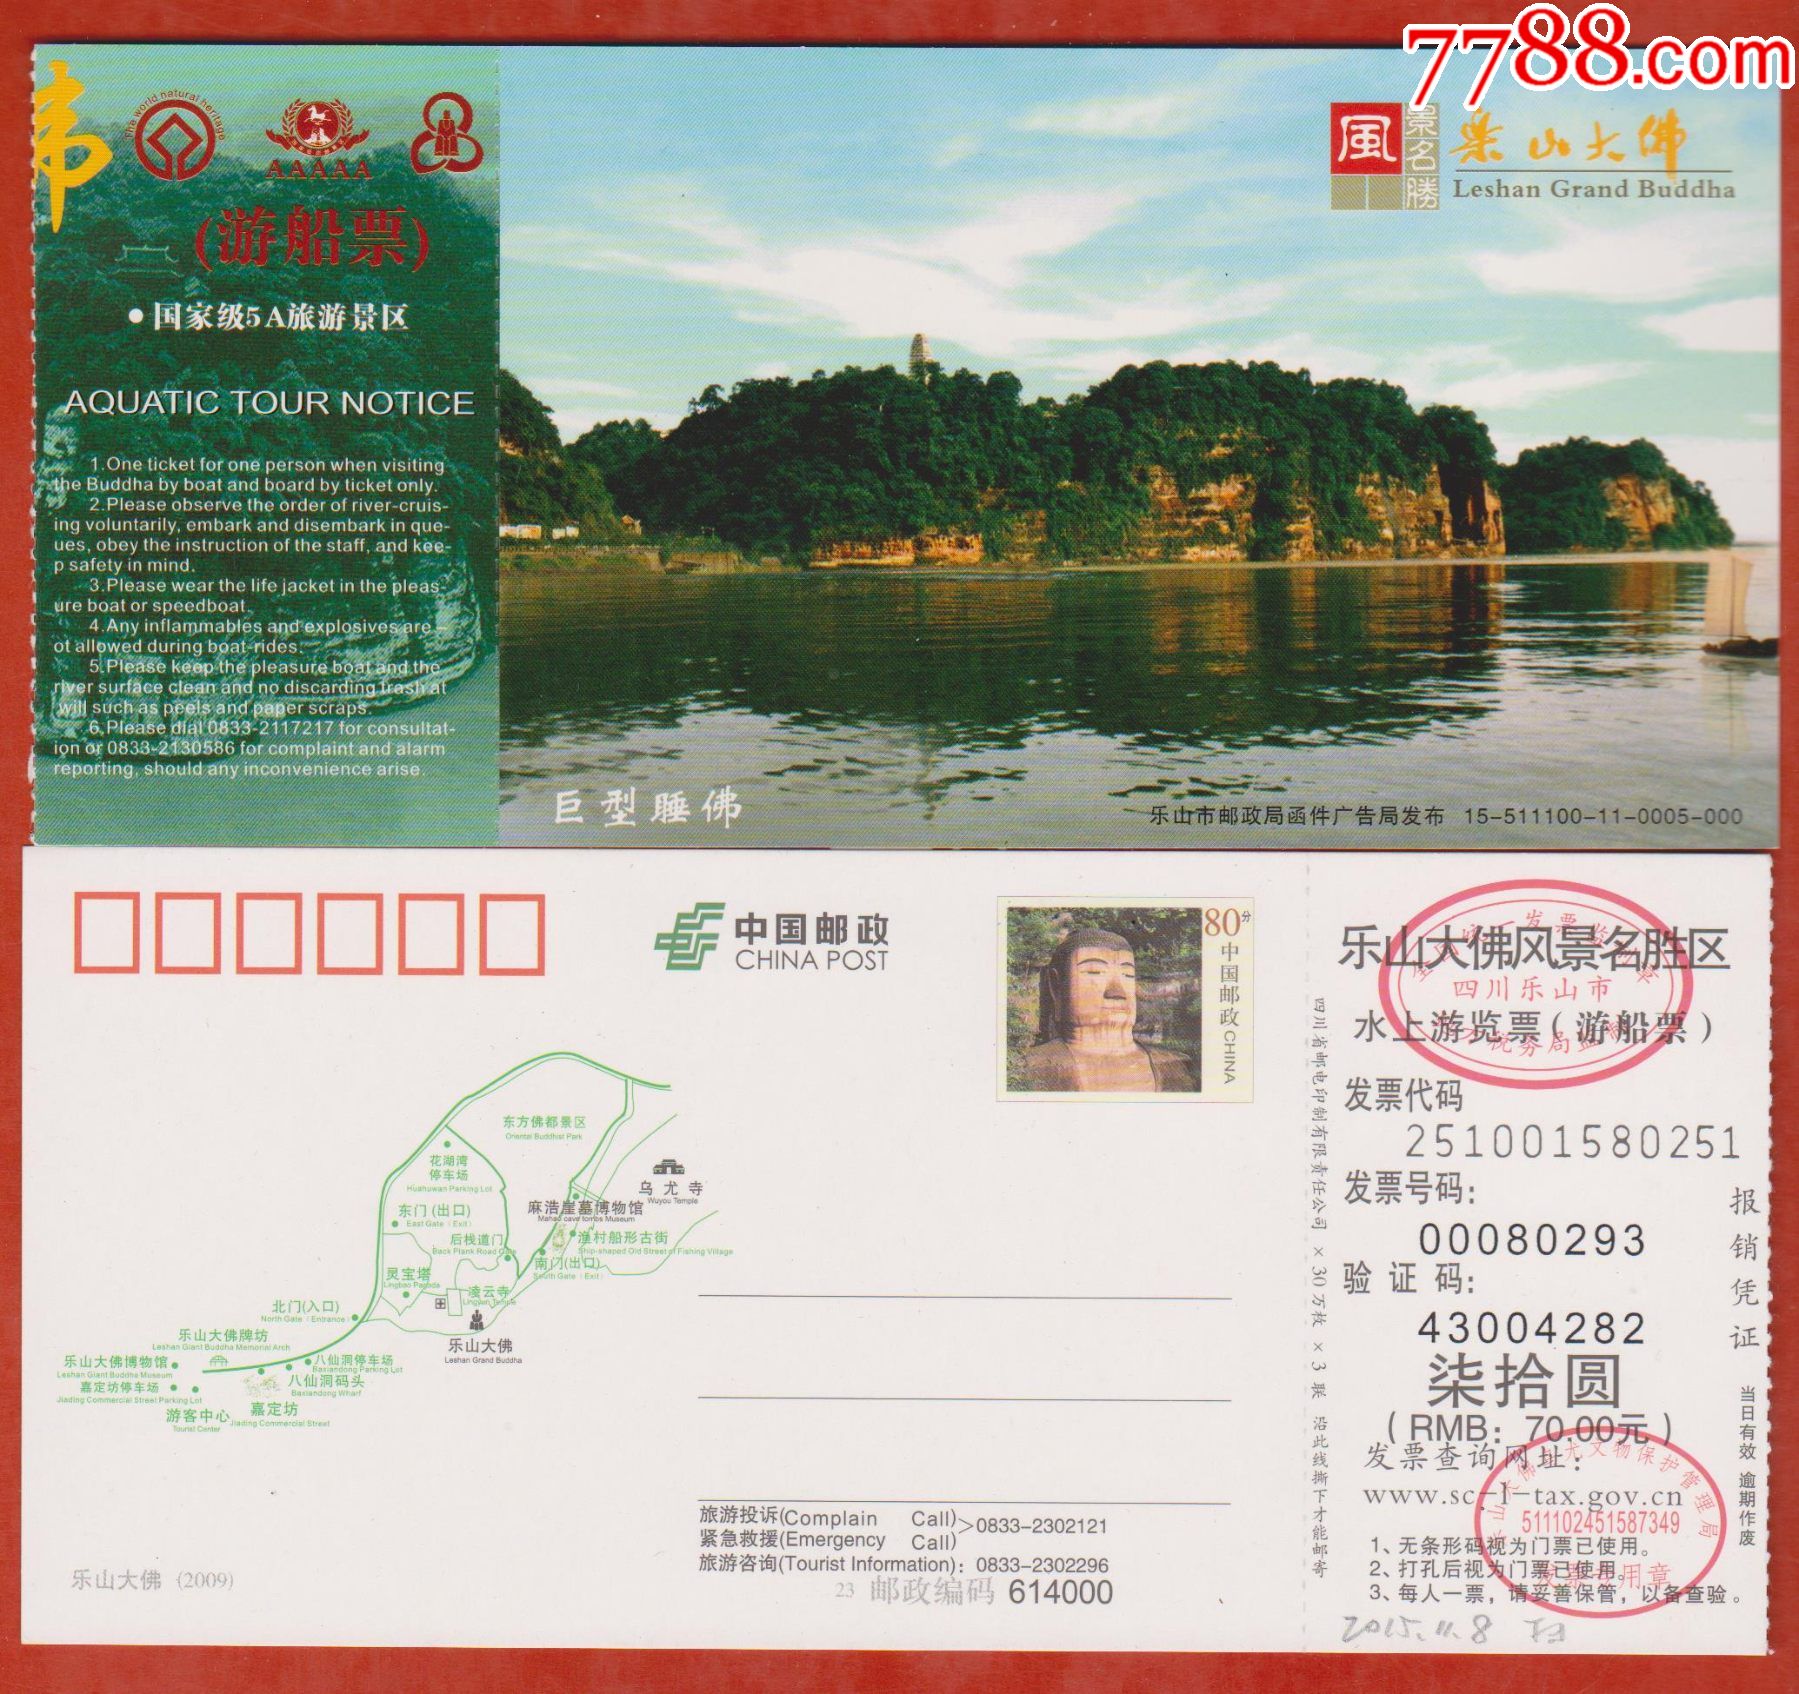 老乐山景区门票图片